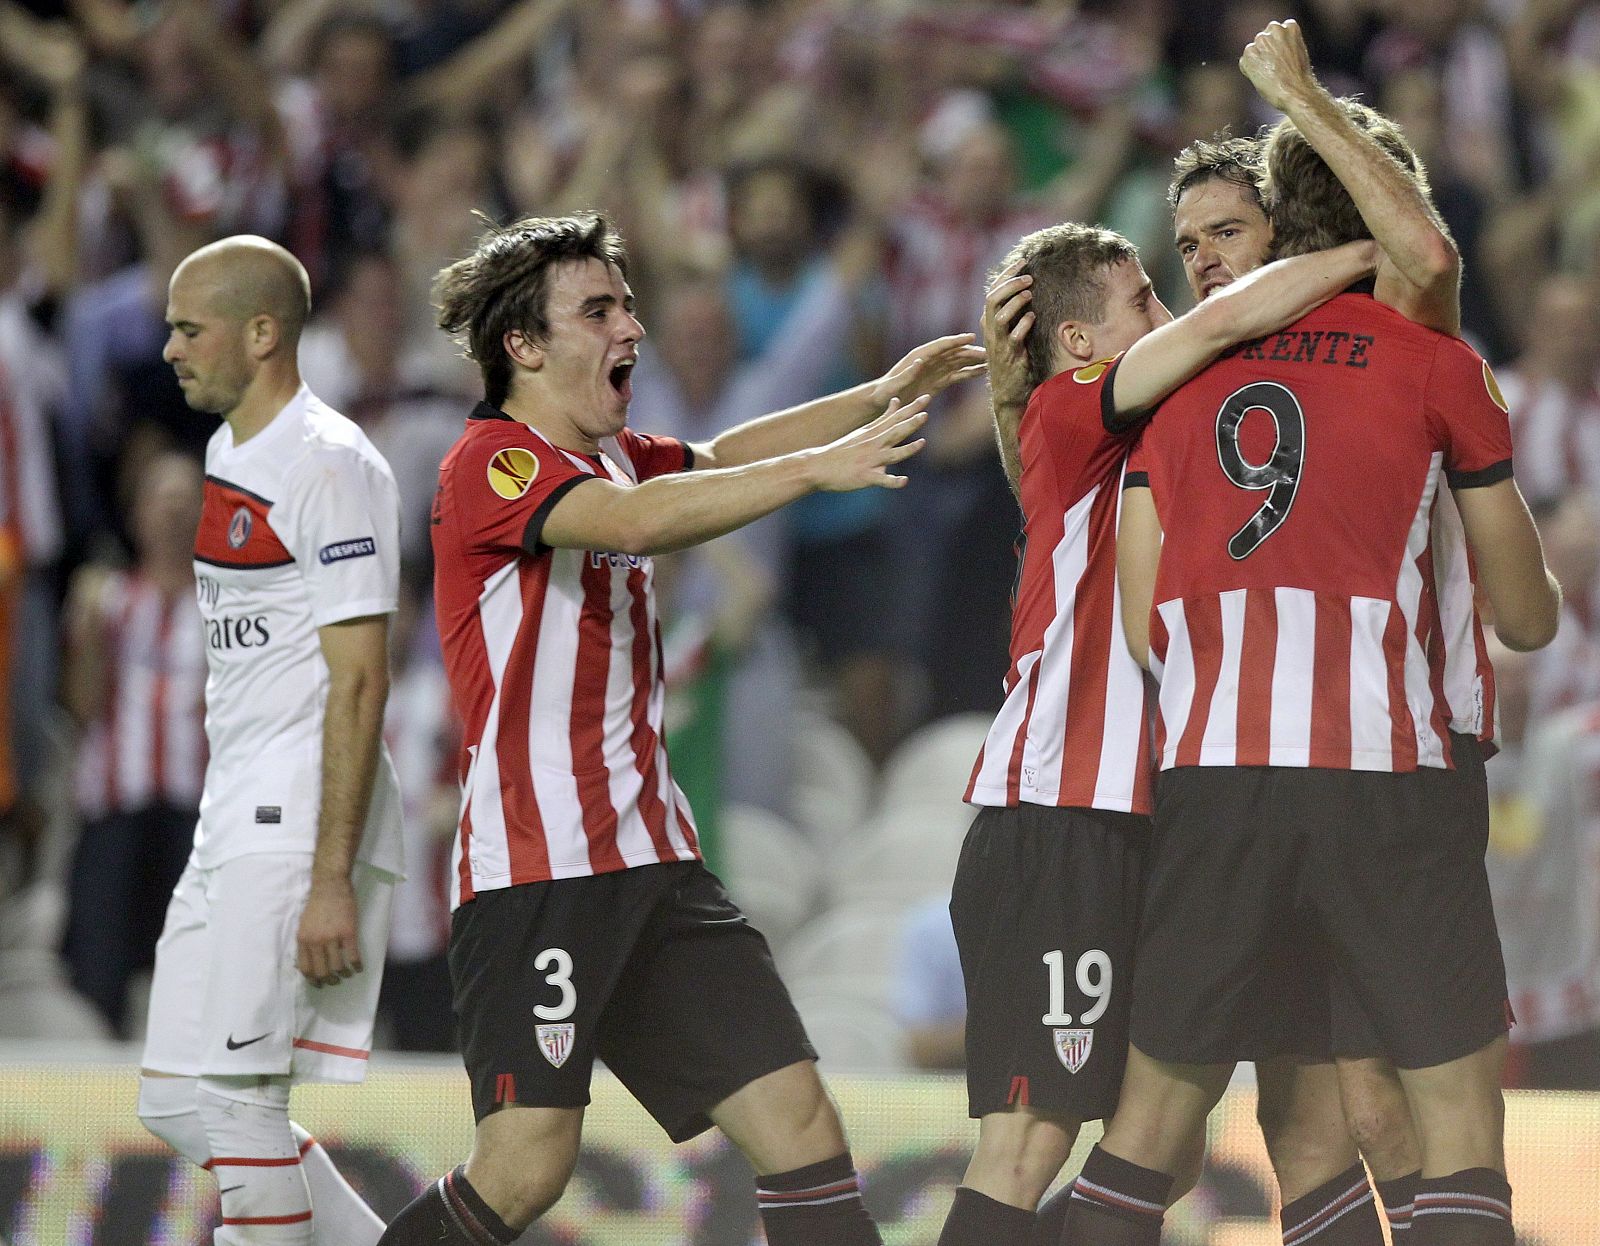 Los jugadores del Athletic de Bilbao celebran el golazo de Gabilondo